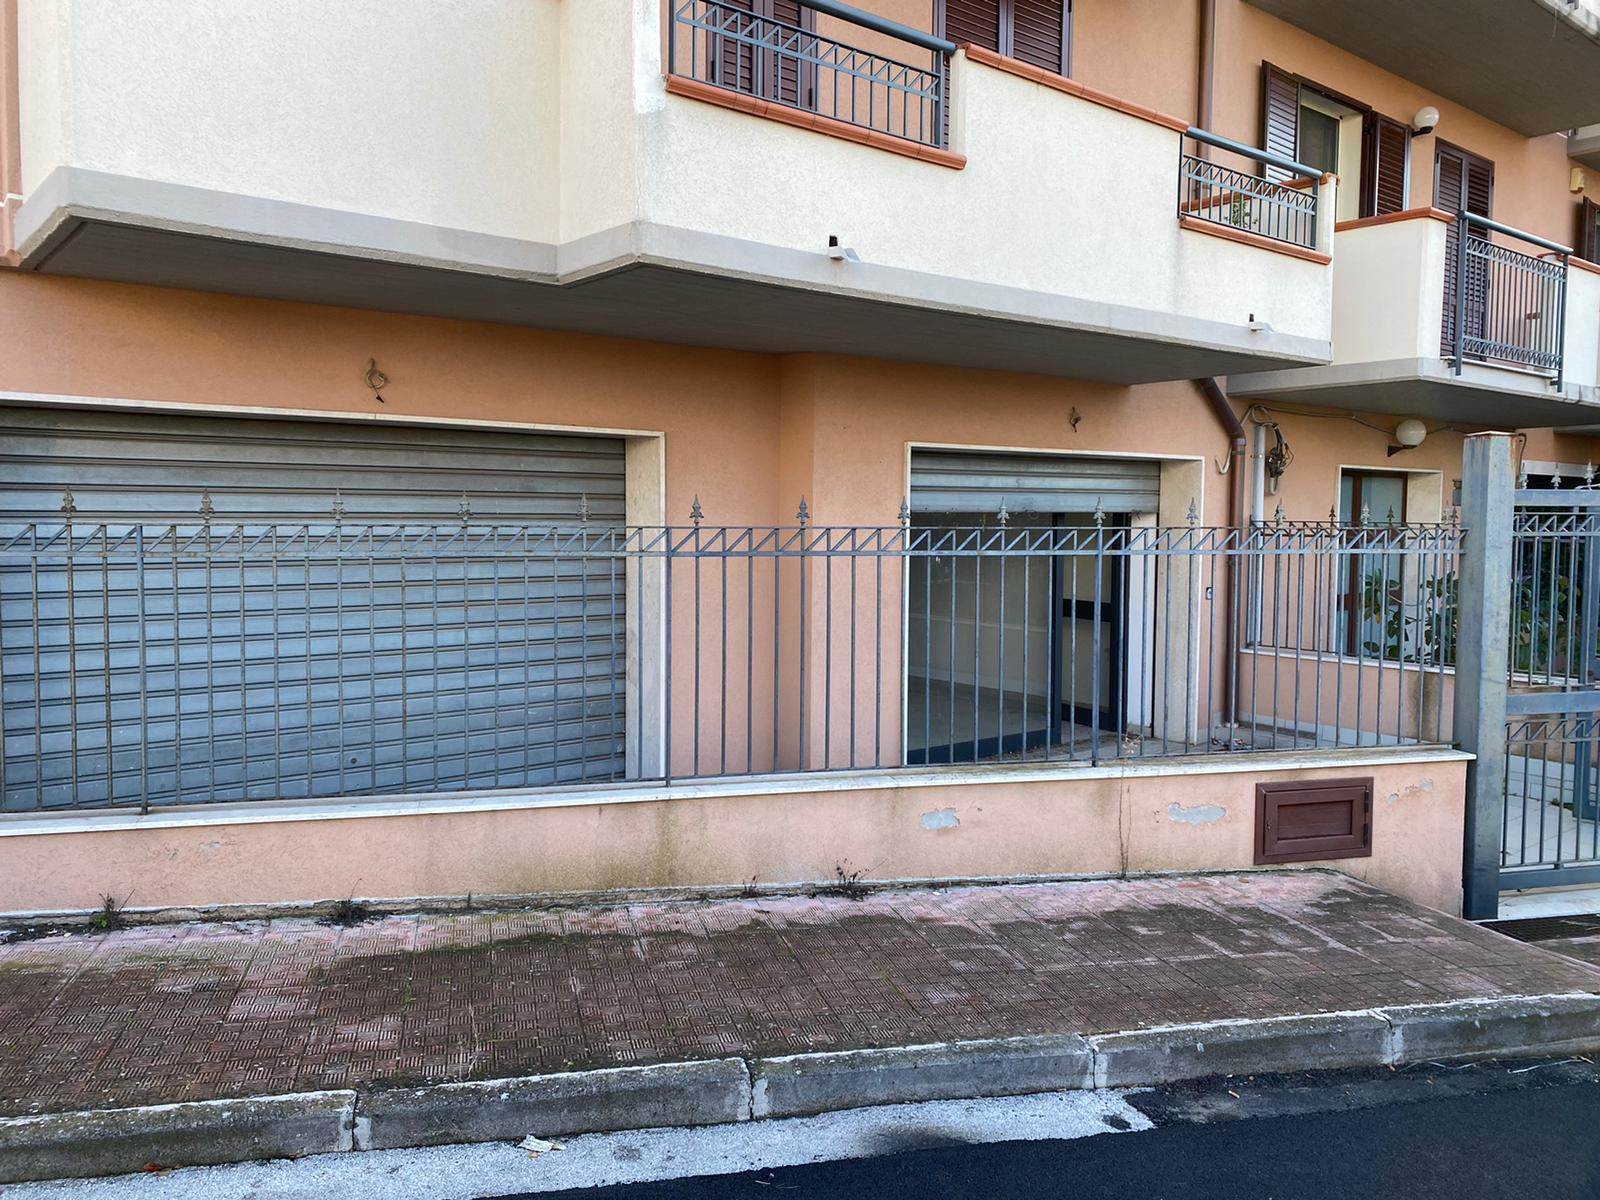 Immobile Commerciale in vendita a Carlentini, 4 locali, zona Località: CENTRO, prezzo € 120.000 | PortaleAgenzieImmobiliari.it